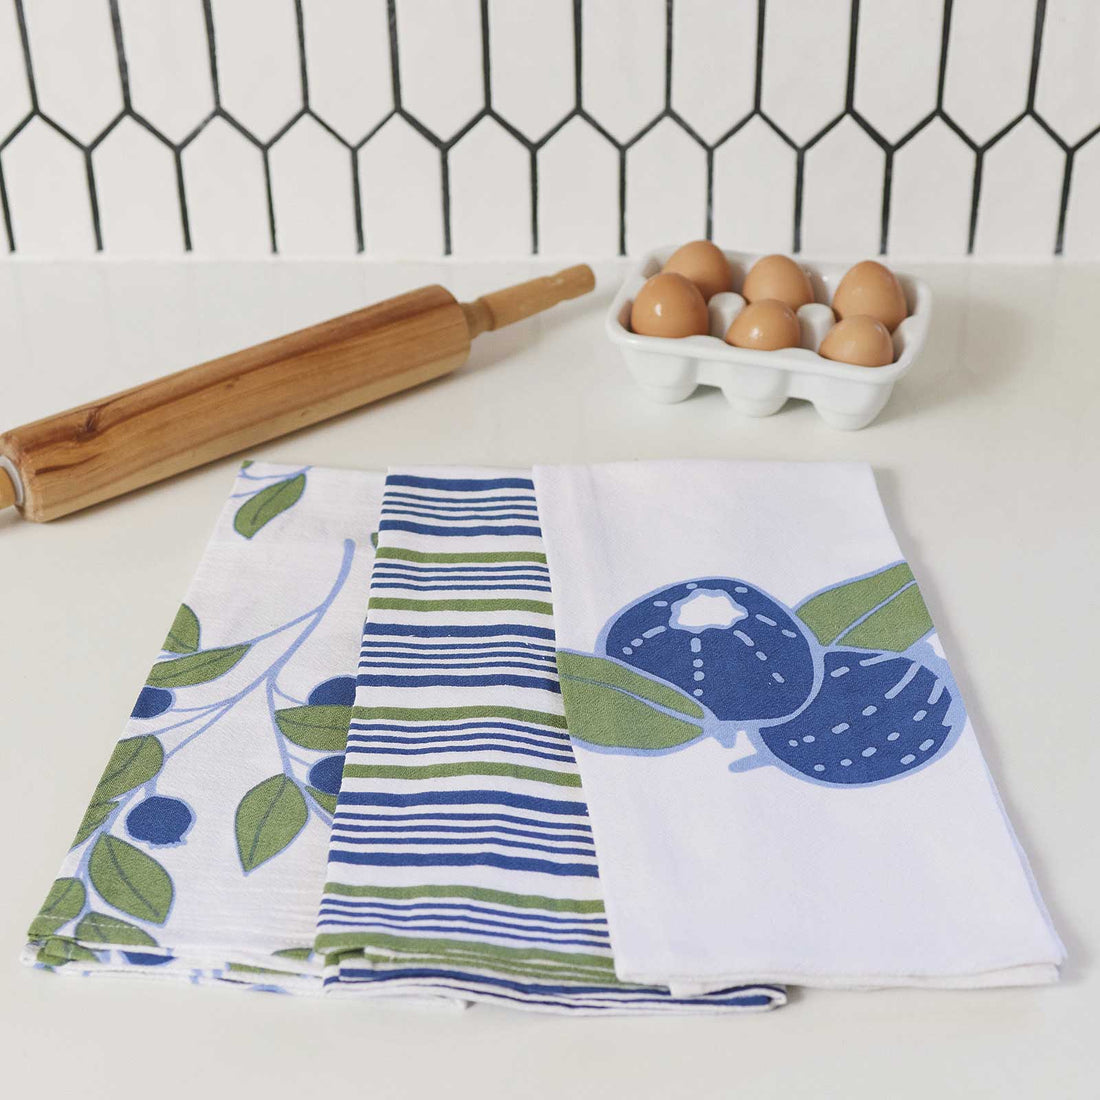 Blueberries Kitchen Towel Set Of 3 Kitchen Towel - rockflowerpaper